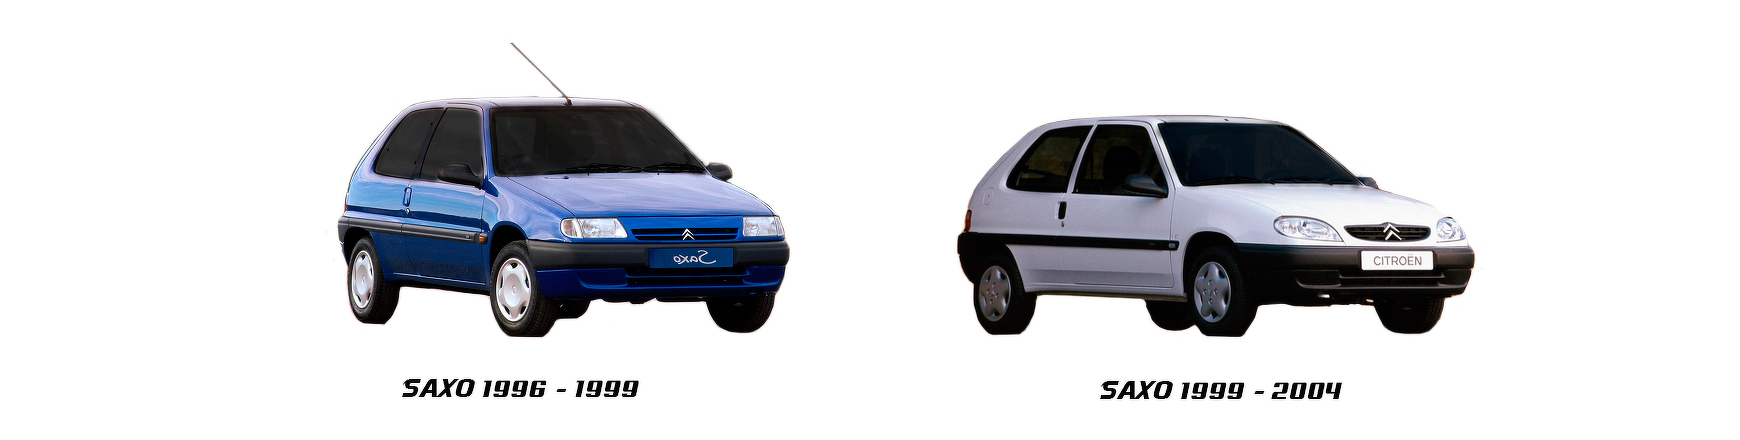 Recambios de Citroën Saxo de 1999, 2000, 2001, 2002, 2003 y 2004.